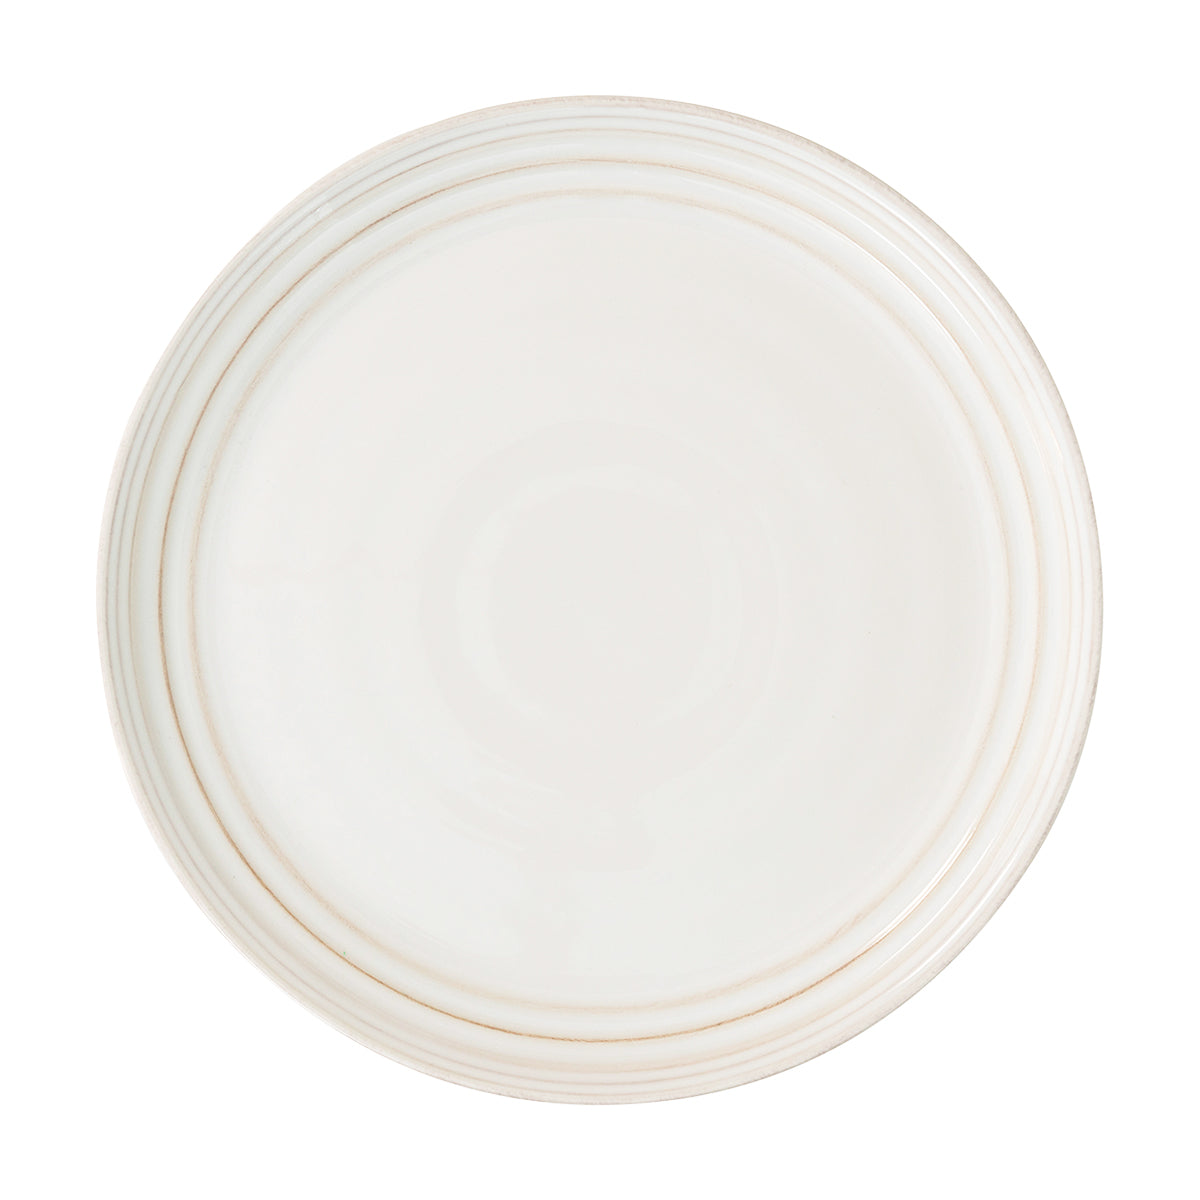 Bilbao Whitewash Dinner Plate